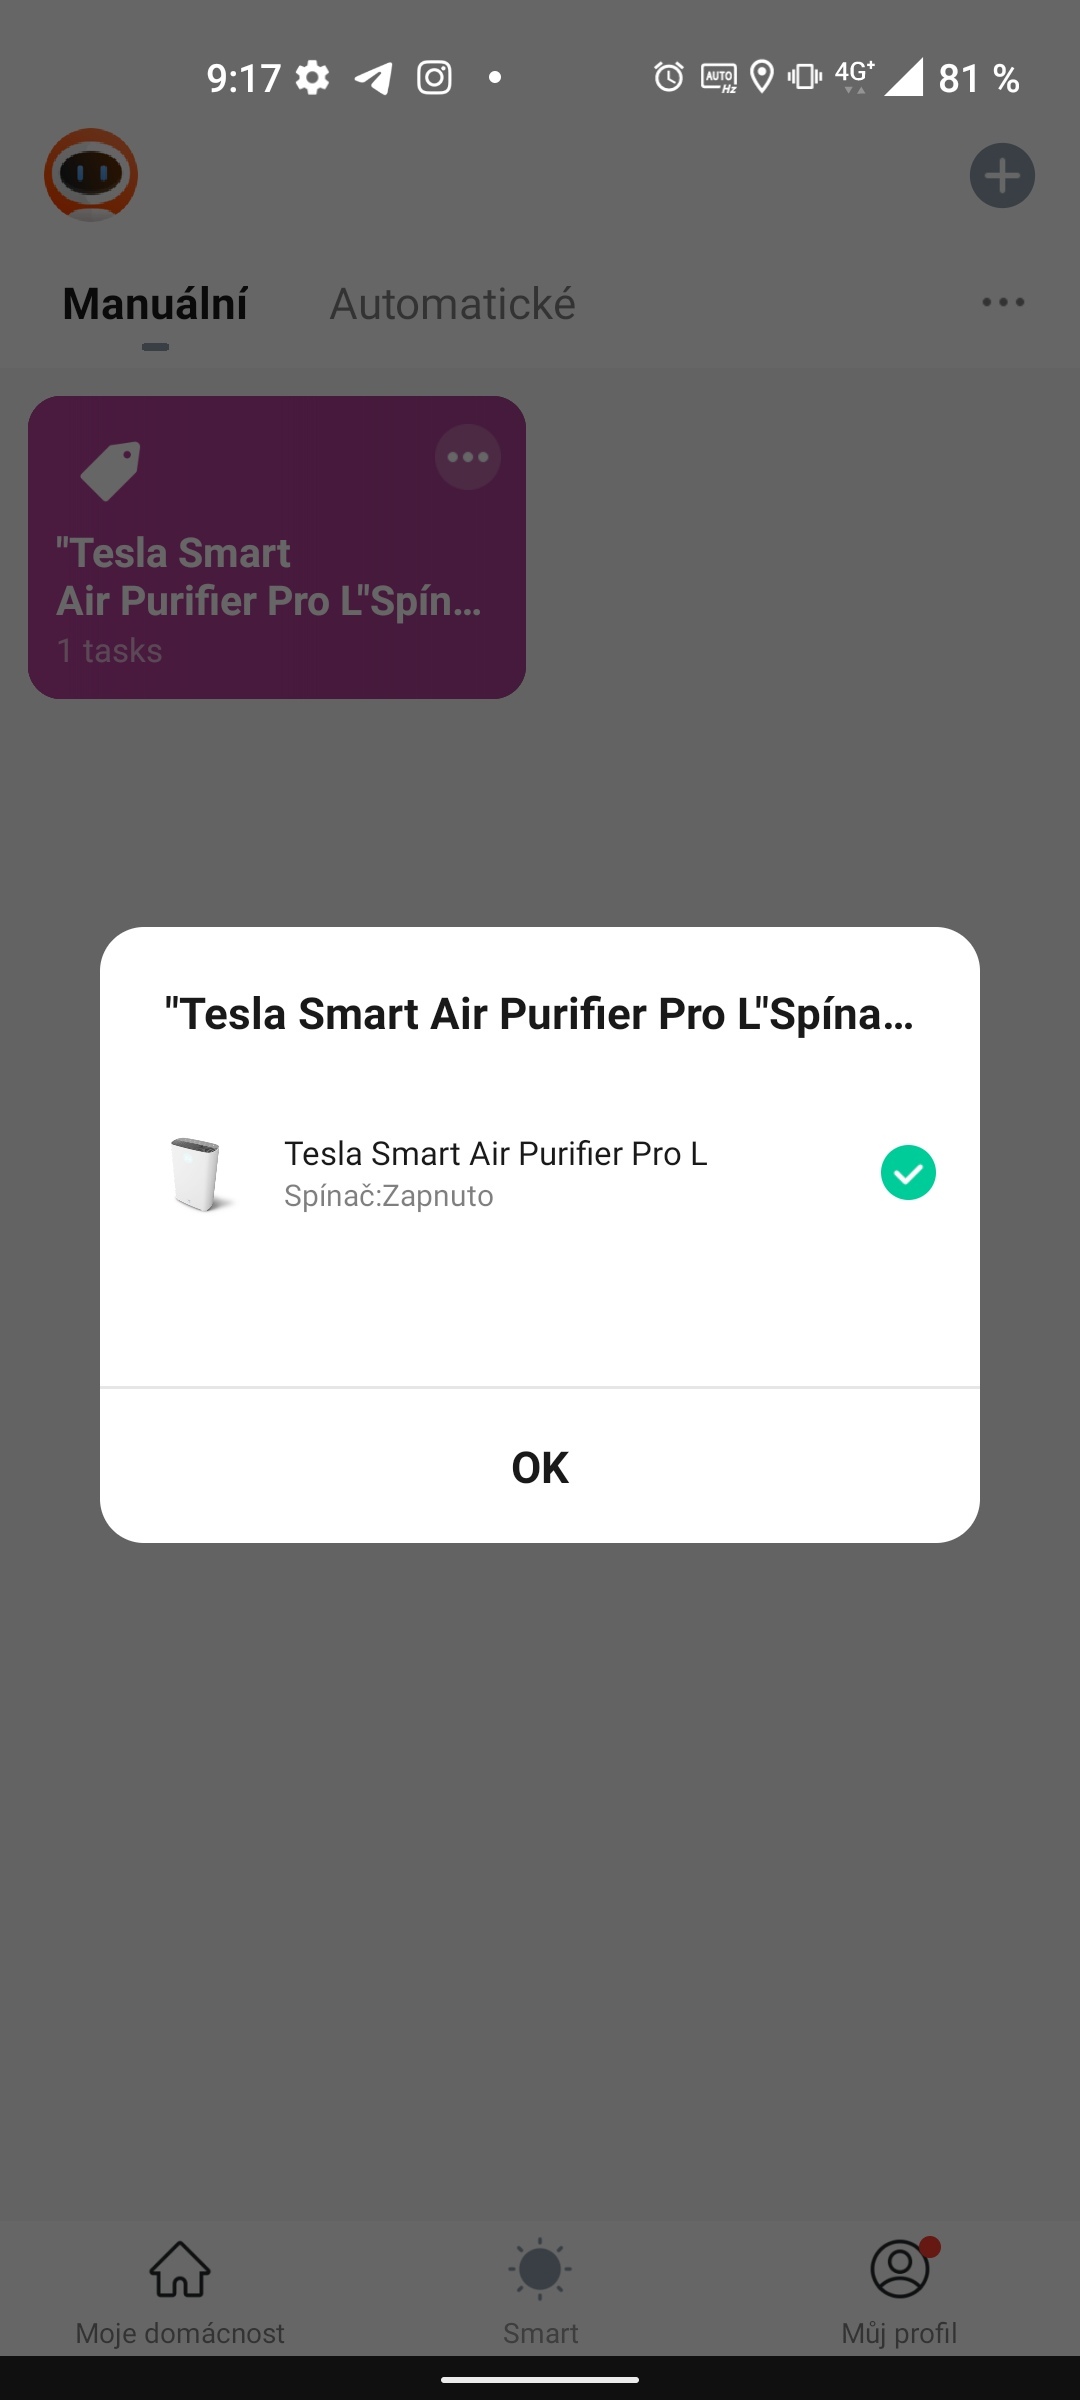 Tesla Smart Air Purifier Pro L